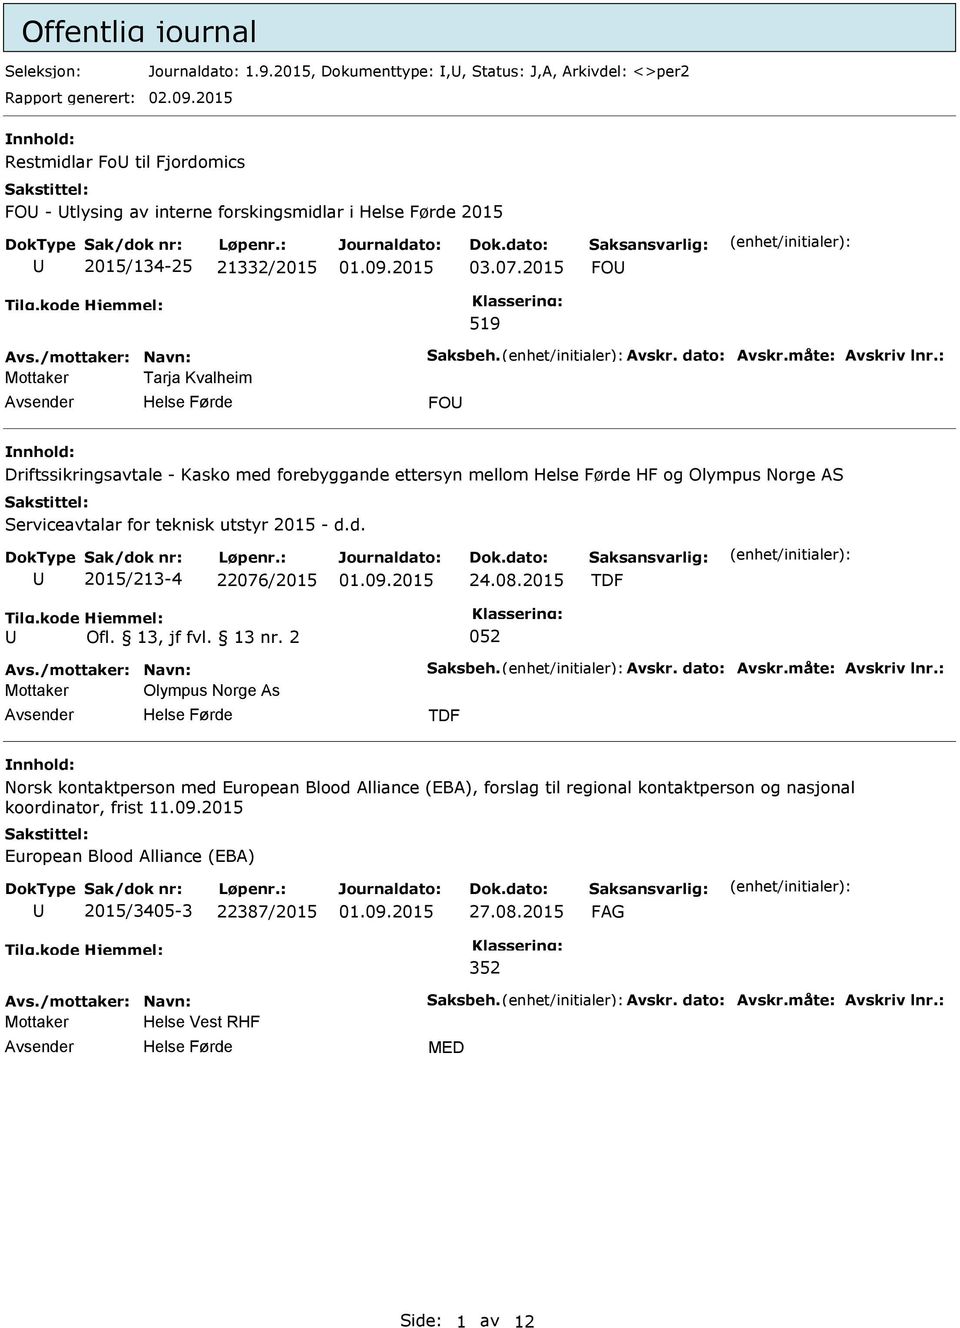 2015 FO 519 Mottaker Tarja Kvalheim FO Driftssikringsavtale - Kasko med forebyggande ettersyn mellom HF og Olympus Norge AS Serviceavtalar for teknisk utstyr 2015 - d.d. 2015/213-4 22076/2015 24.